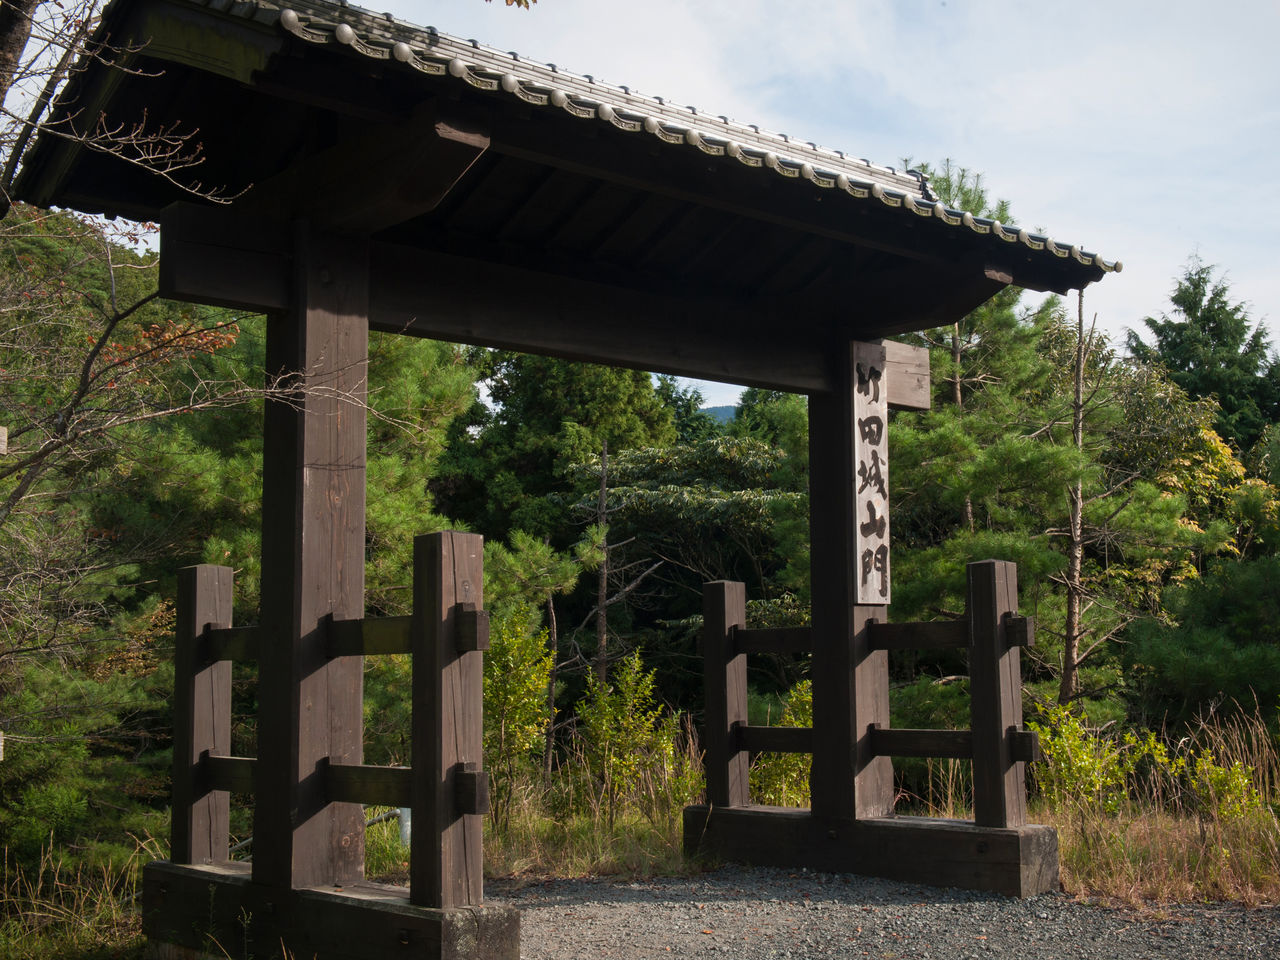 La puerta de montaña del castillo de Takeda está situada junto al aparcamiento en la ladera. Es el punto de partida de la ruta de Ōtemon.